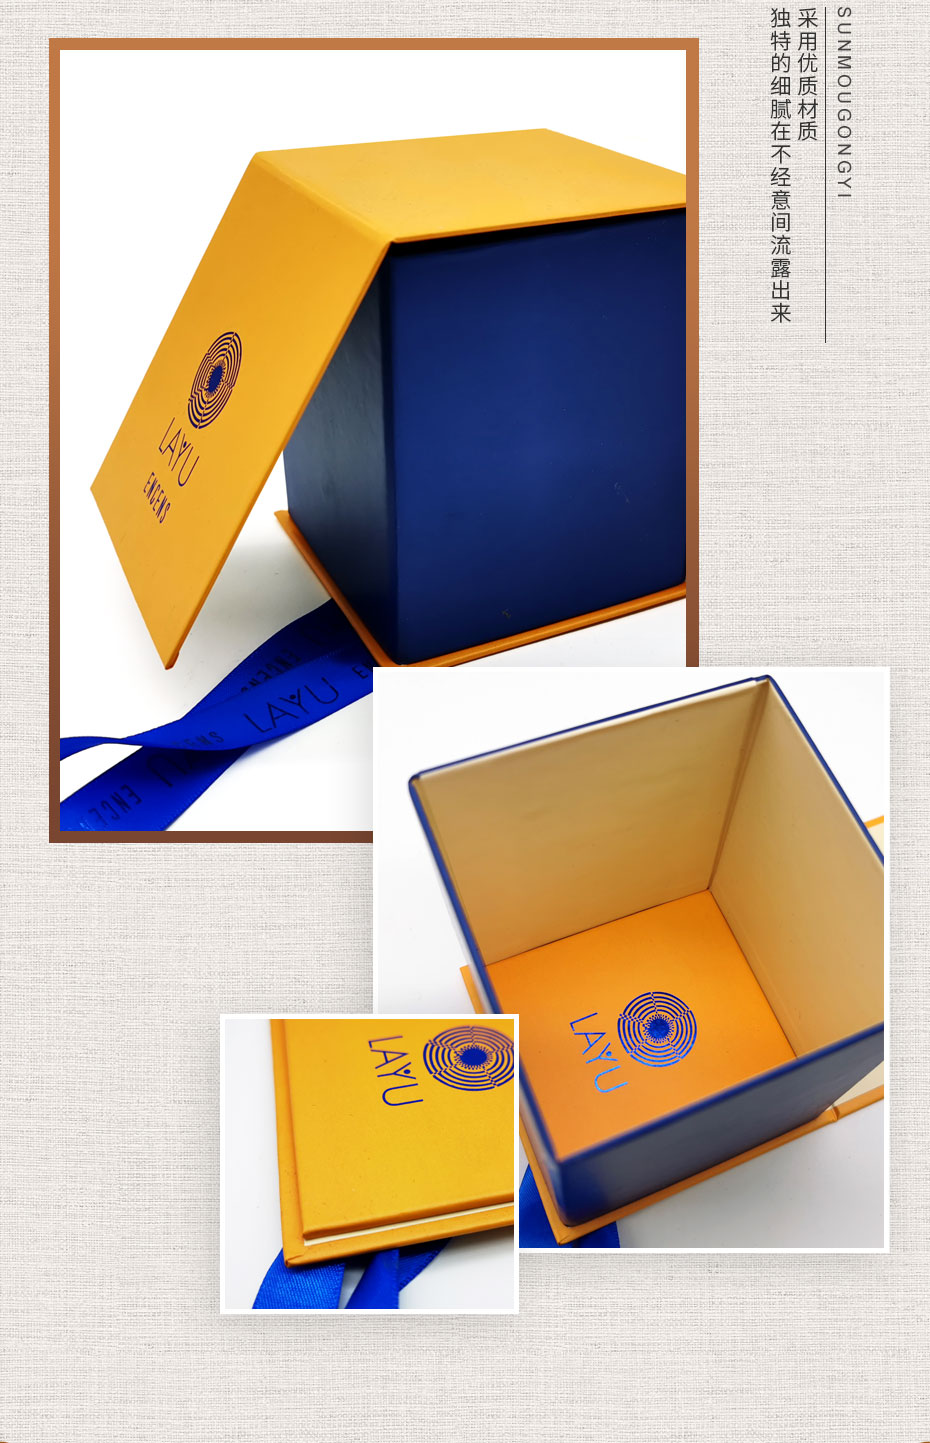 礼品盒产品模板_03.jpg